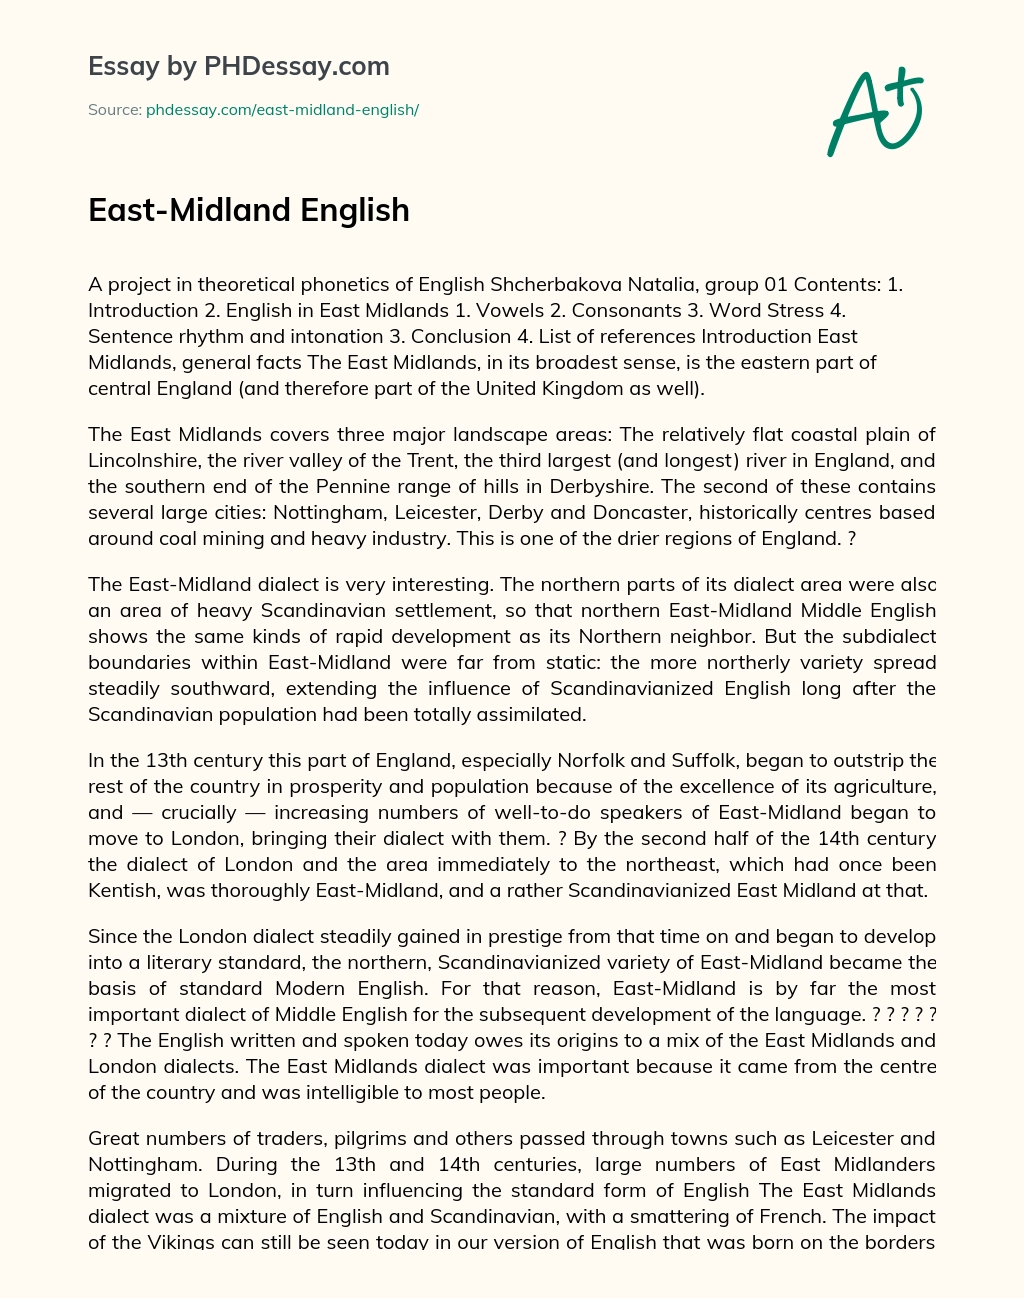 East-Midland English essay